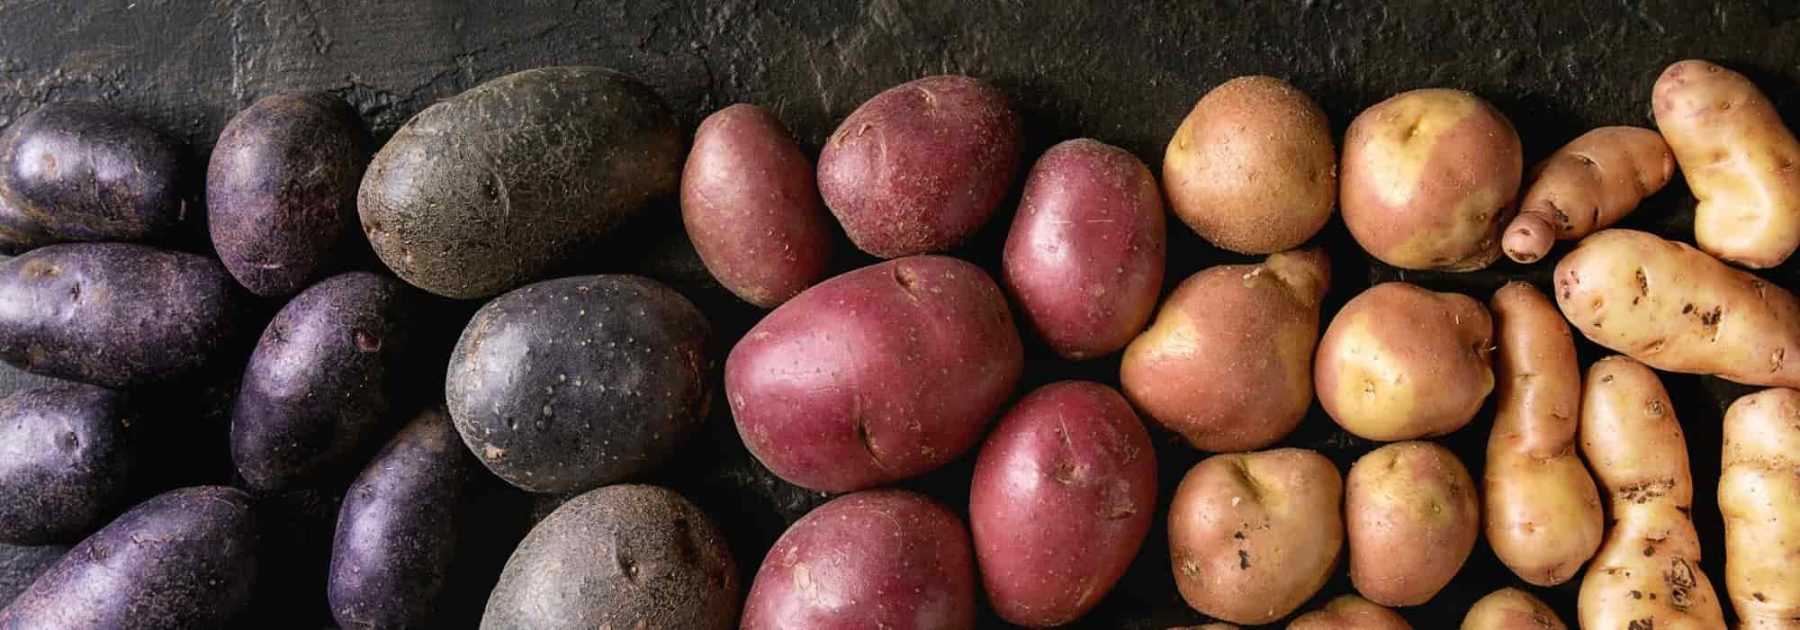 Tout savoir sur les pommes de terre à l'eau